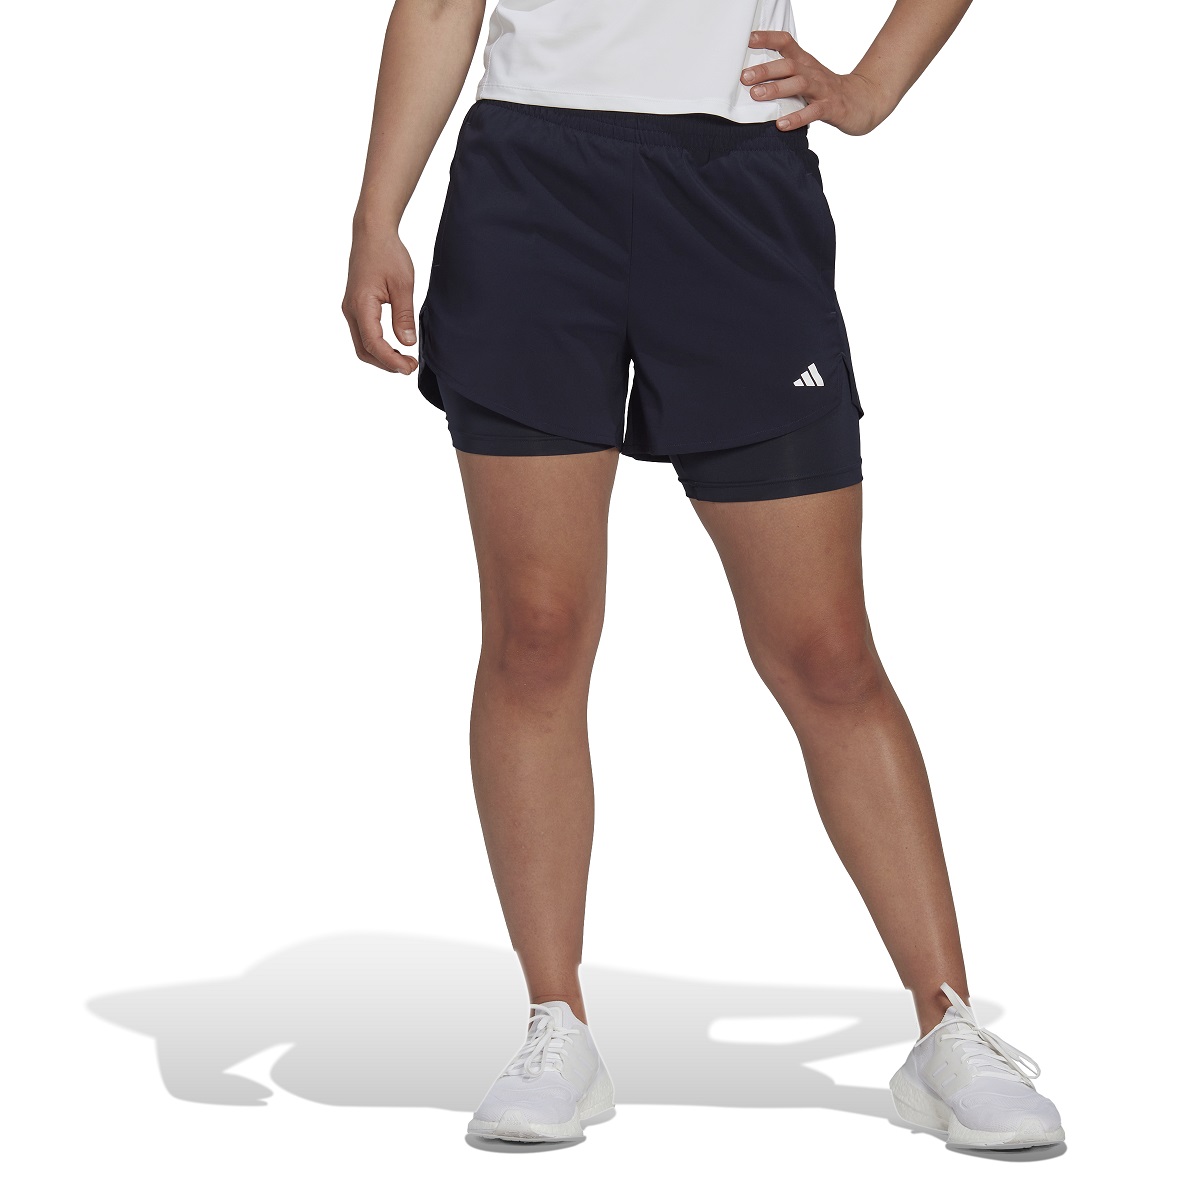 Shorts Adidas 2in1 Made for Training Minimal Feminino